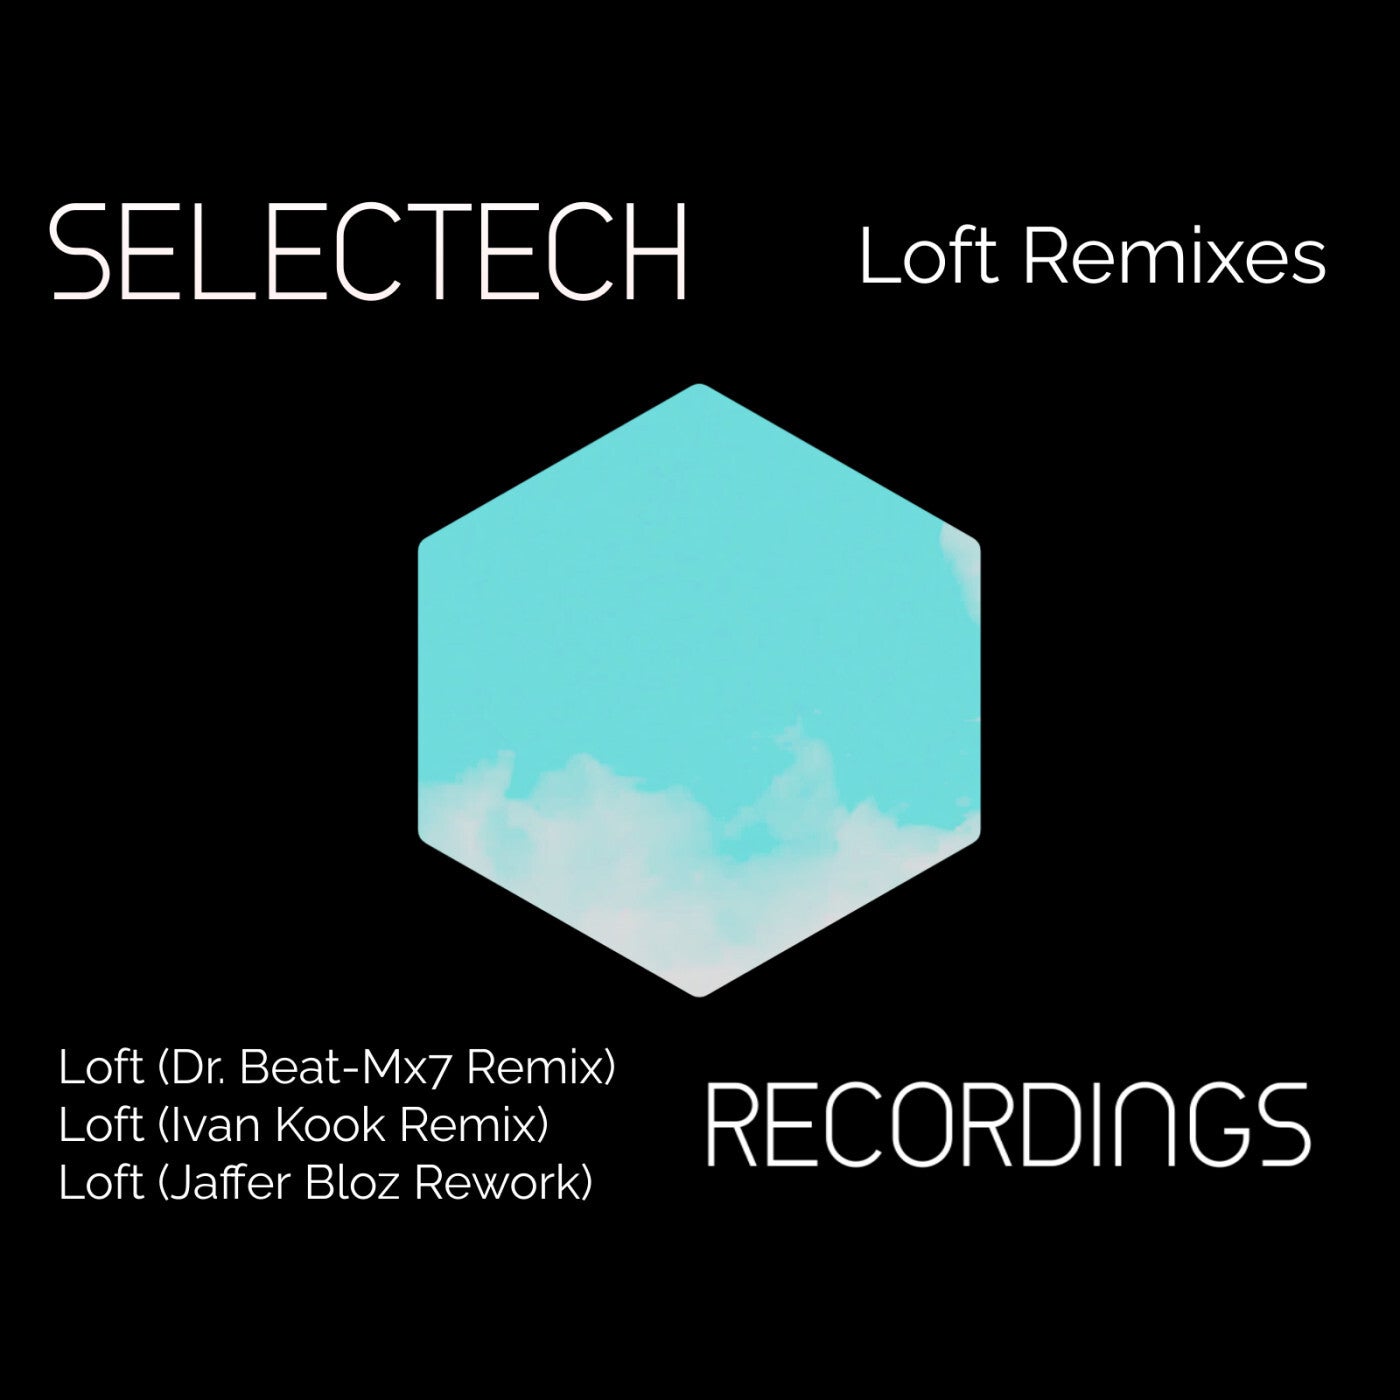 Loft Remixes